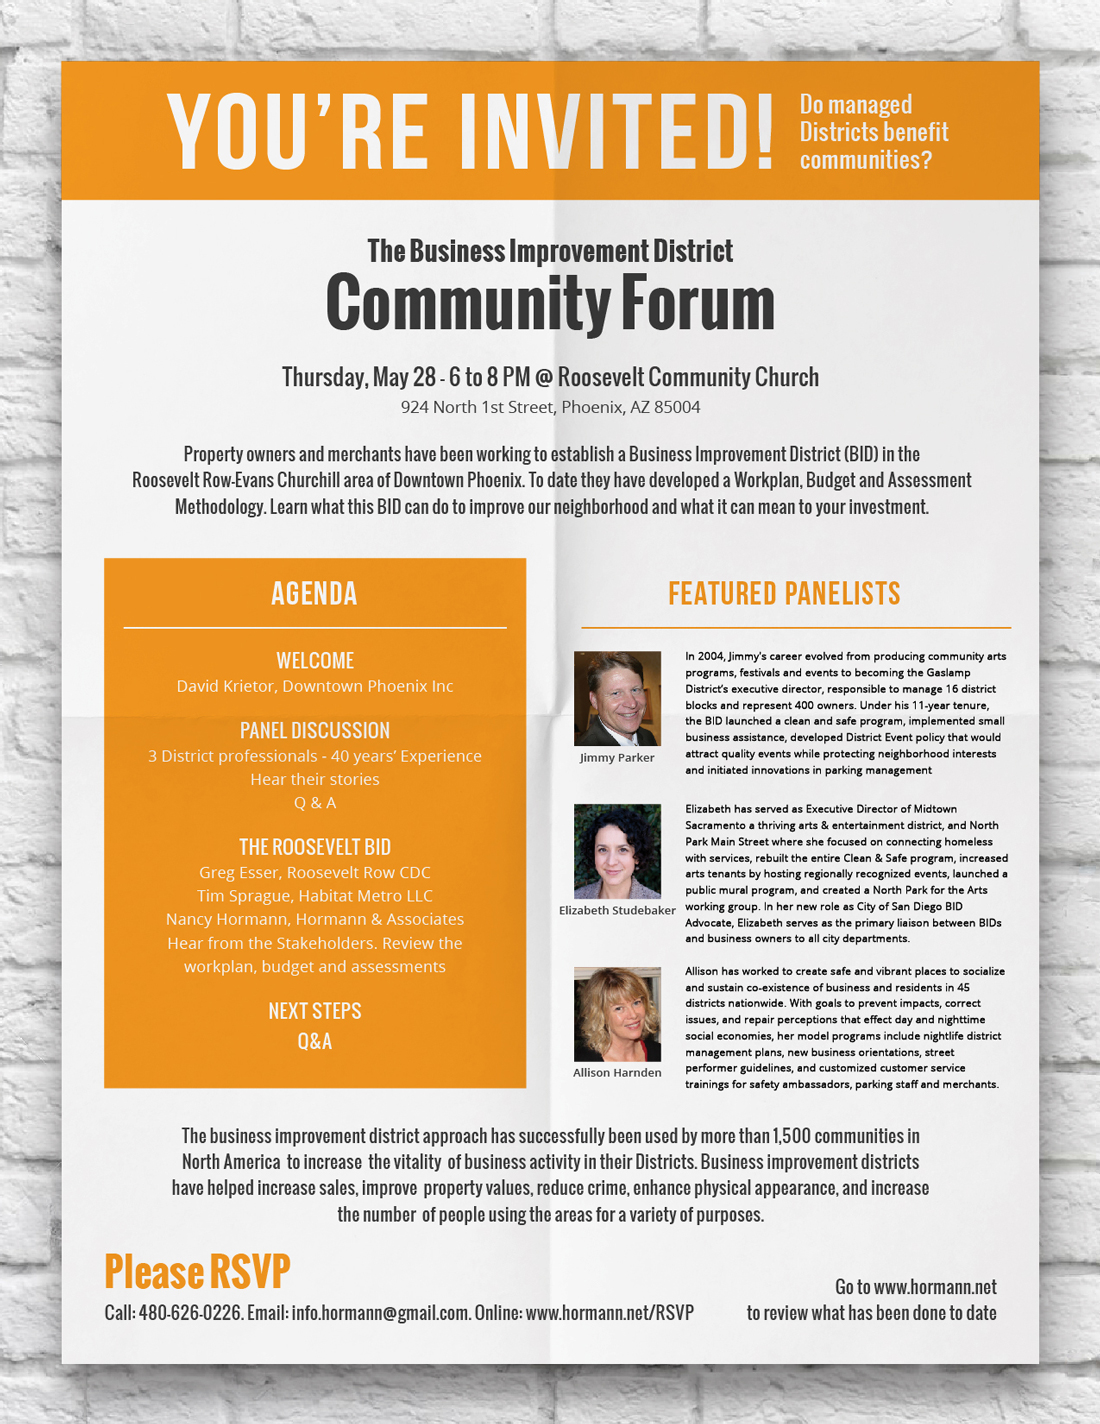 BID-Community-Forum-Invite